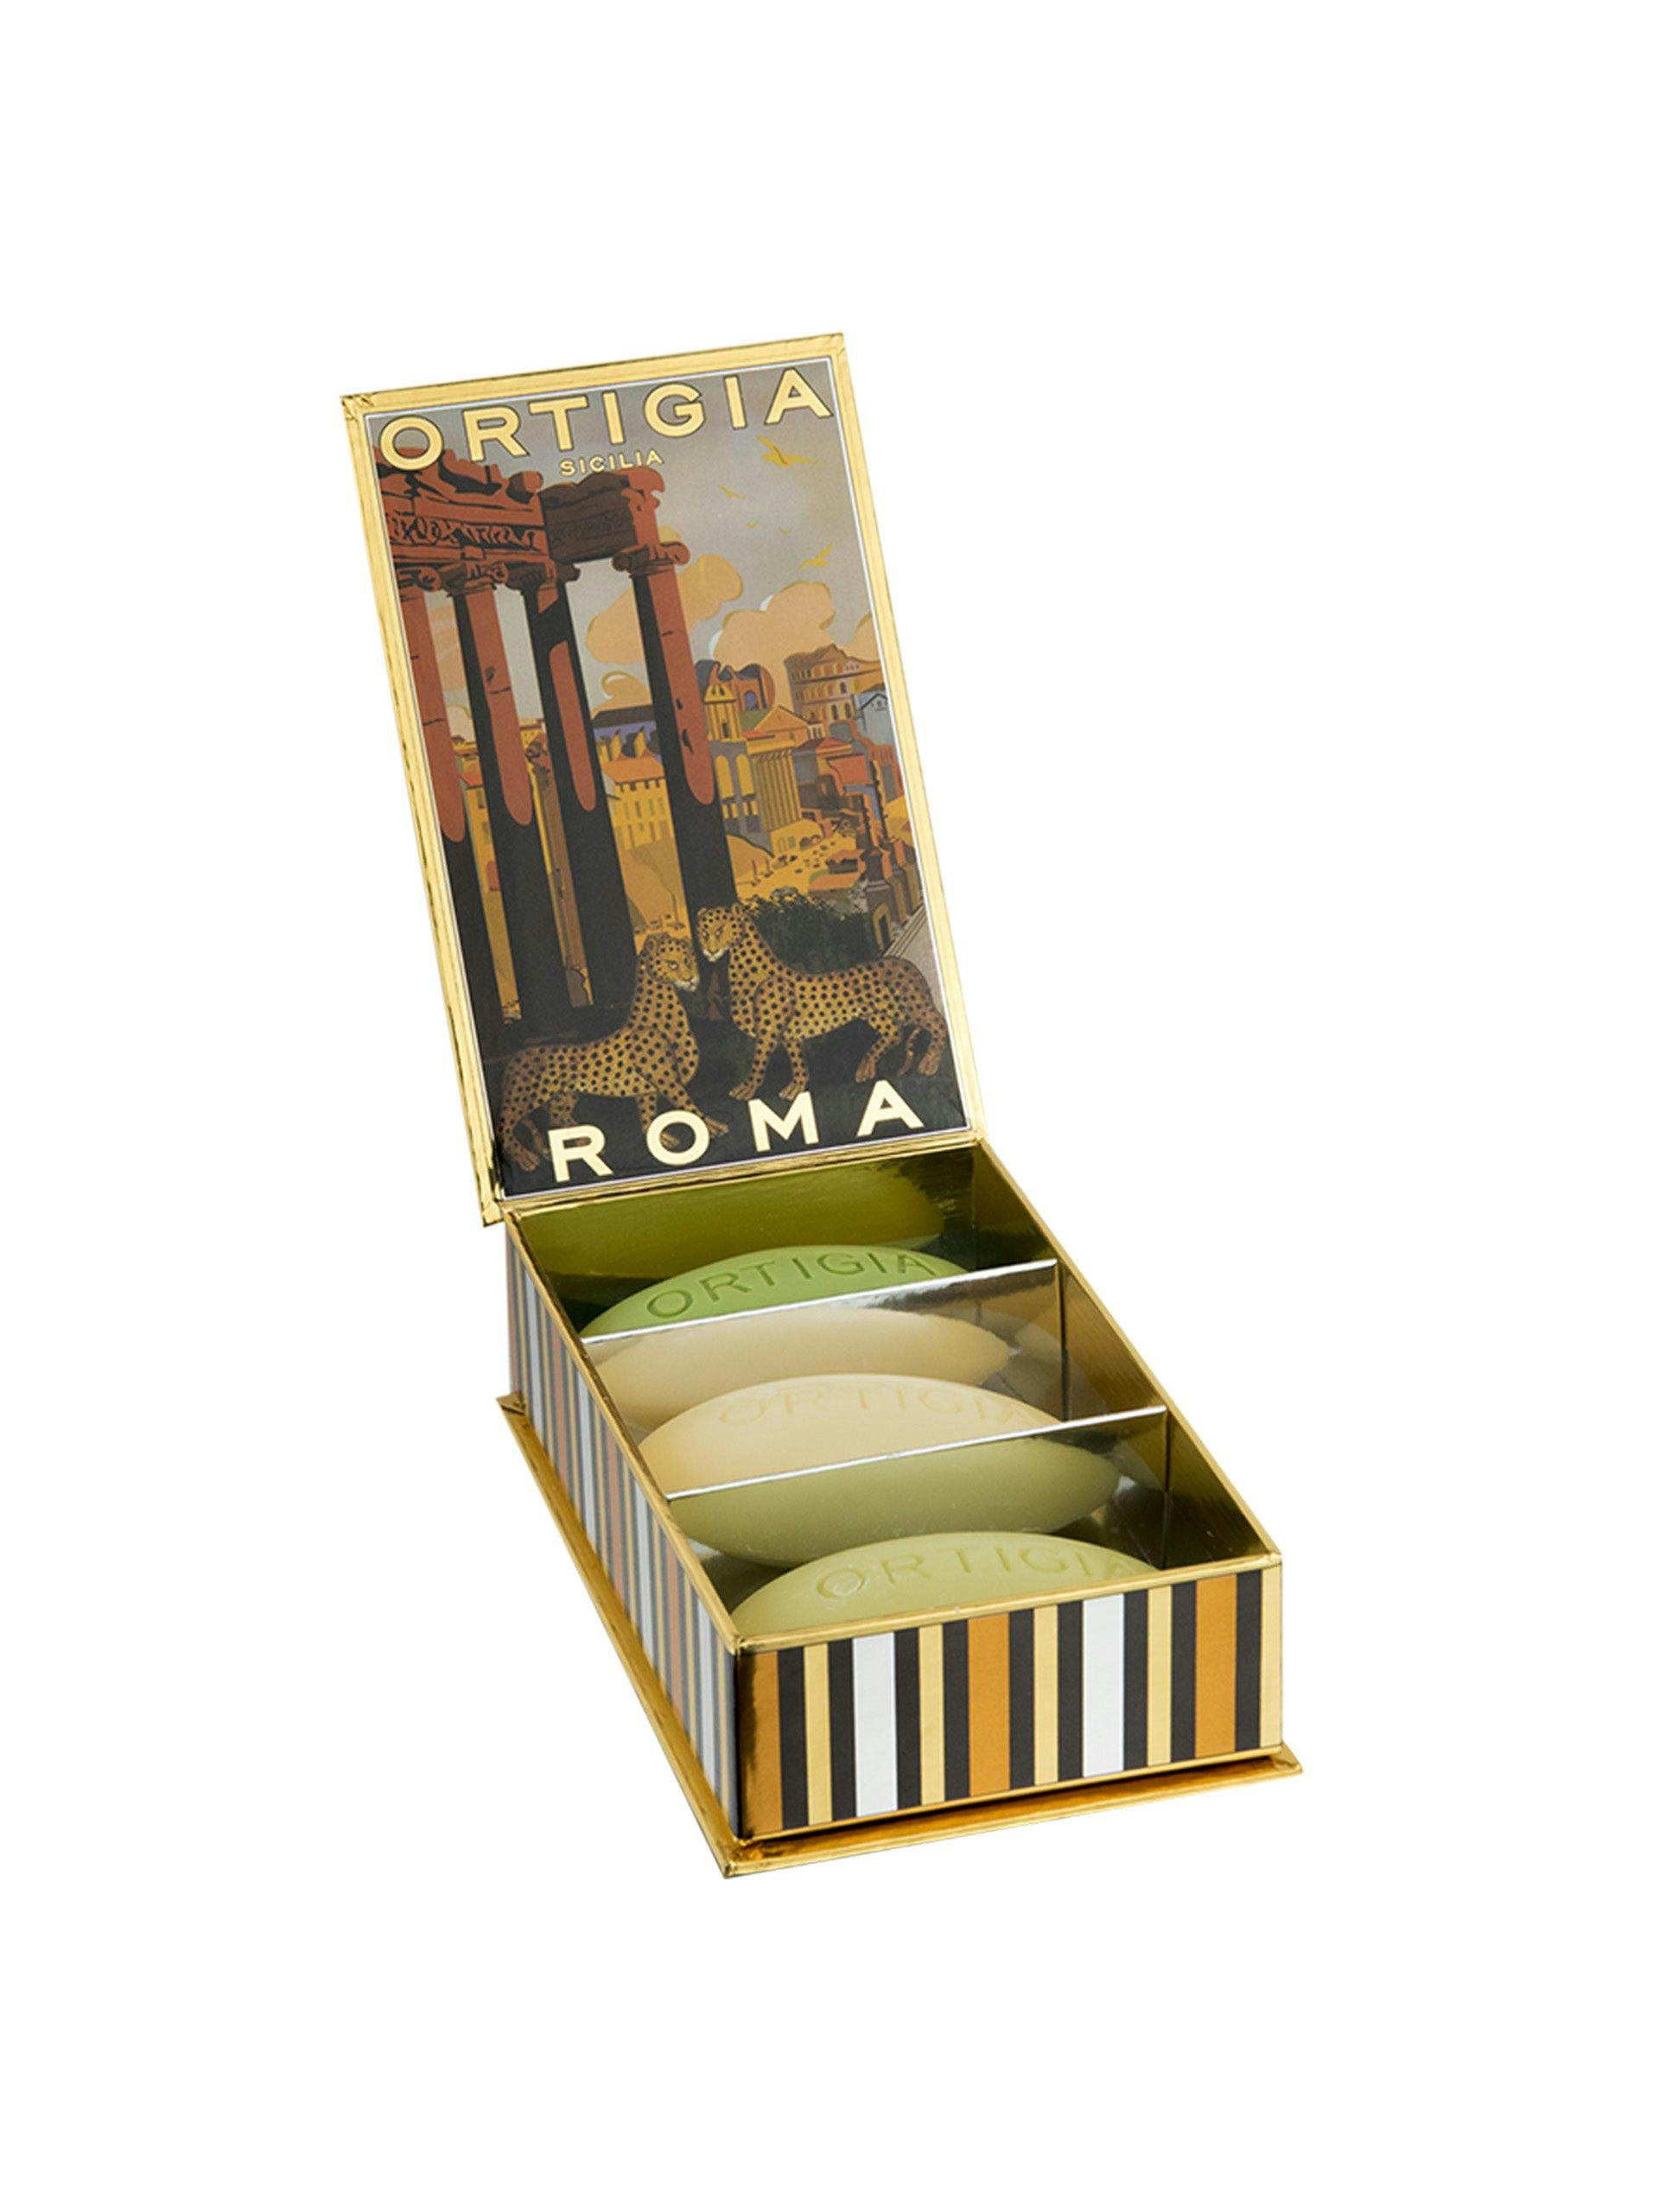 Ortigia Roma assorted soap bars